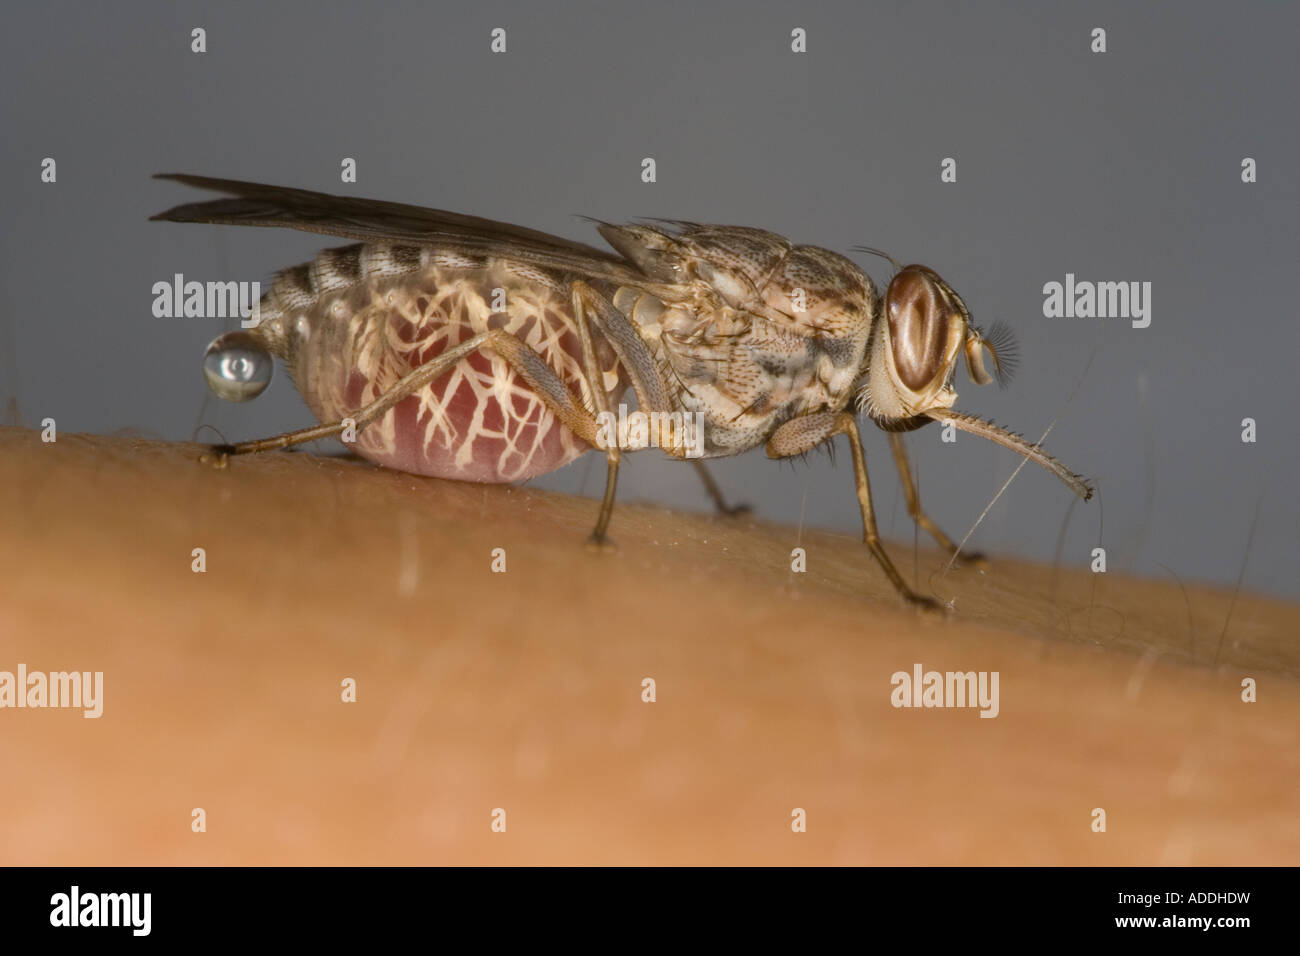 Bloodfed female Savannah Tsetse fly (Glossina morsitans morsitans) exhibiting pre-diuresis. Stock Photo